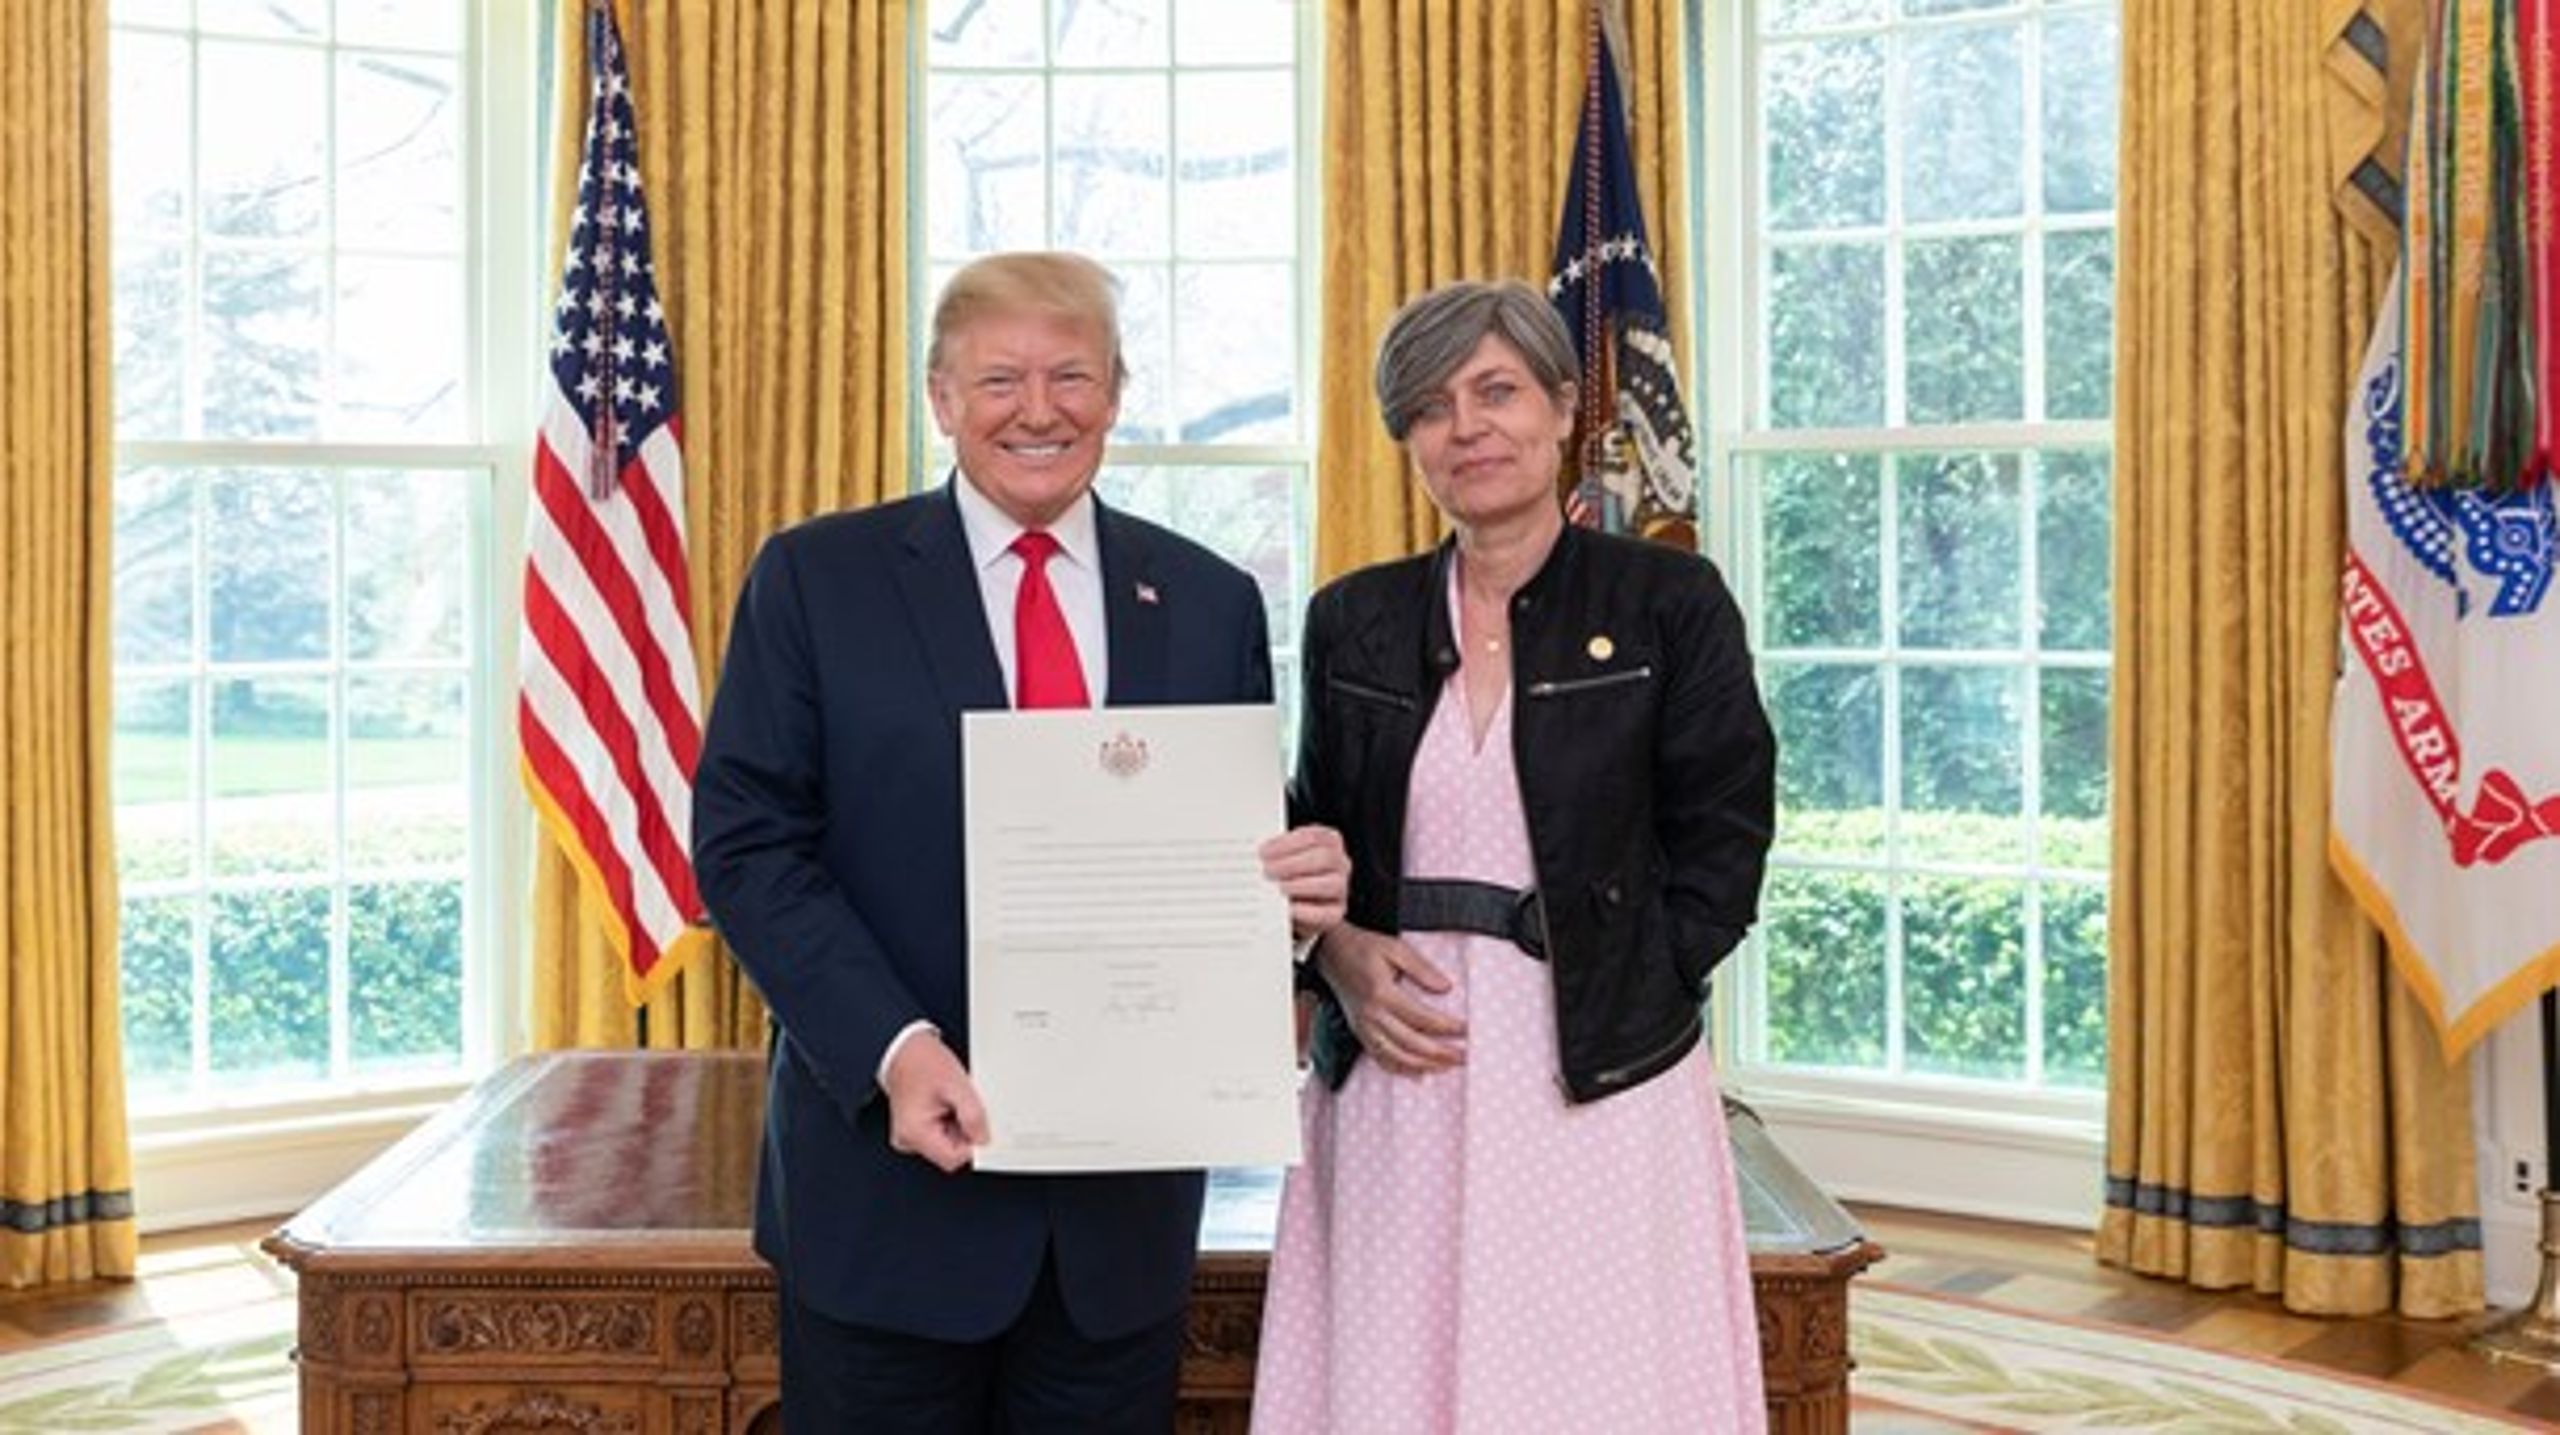 Danmarks ambassadør i USA, Lone Dencker Wisborg, på besøg hos USA's præsident, Donald Trump, i Det Ovale Værelse, hvor hun afleverede sit akkrediteringsbrev fra dronning Margrethe.